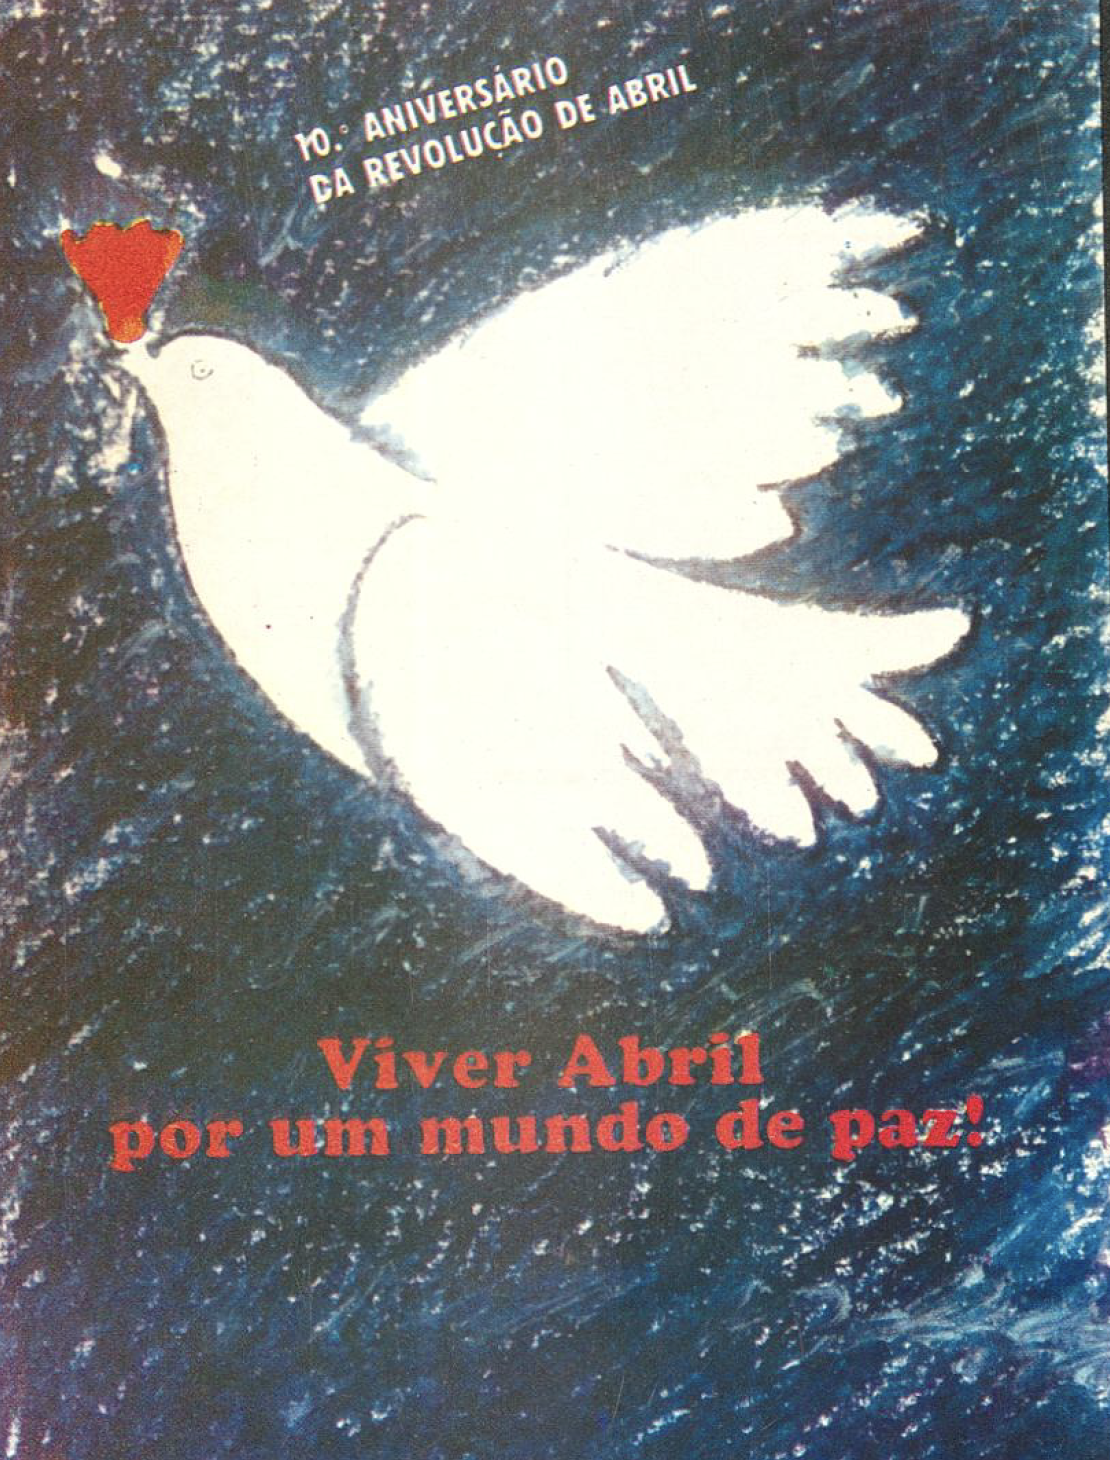 "Viver Abril por um mundo de paz"